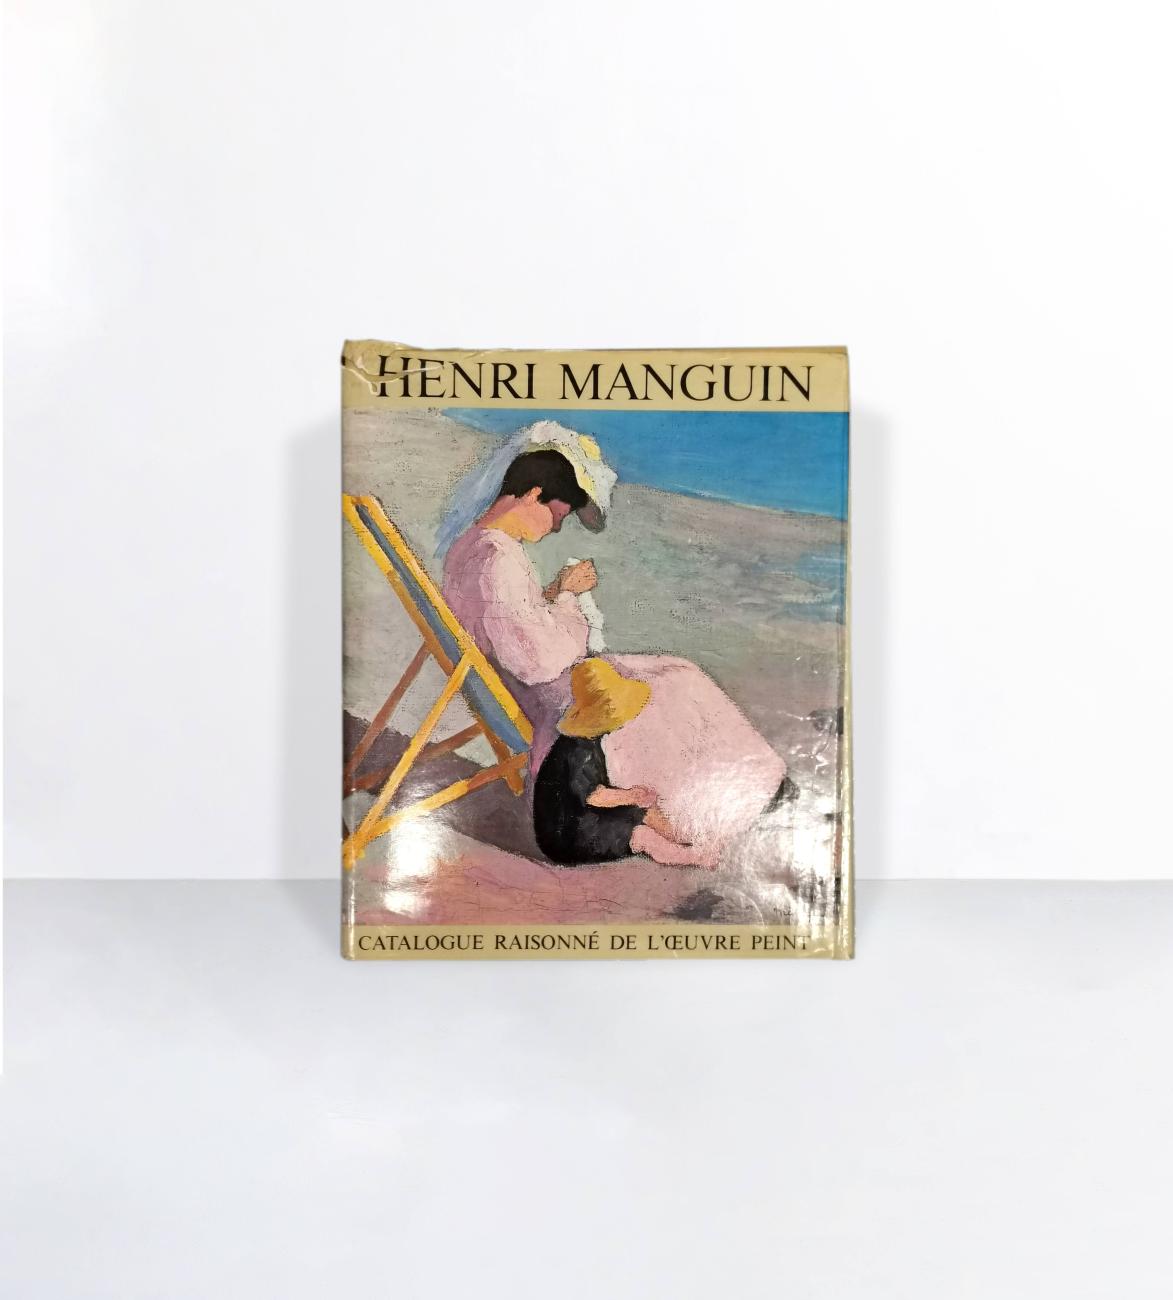 Henri Manguin, Catalogue Raisonné de l'oeuvre peint